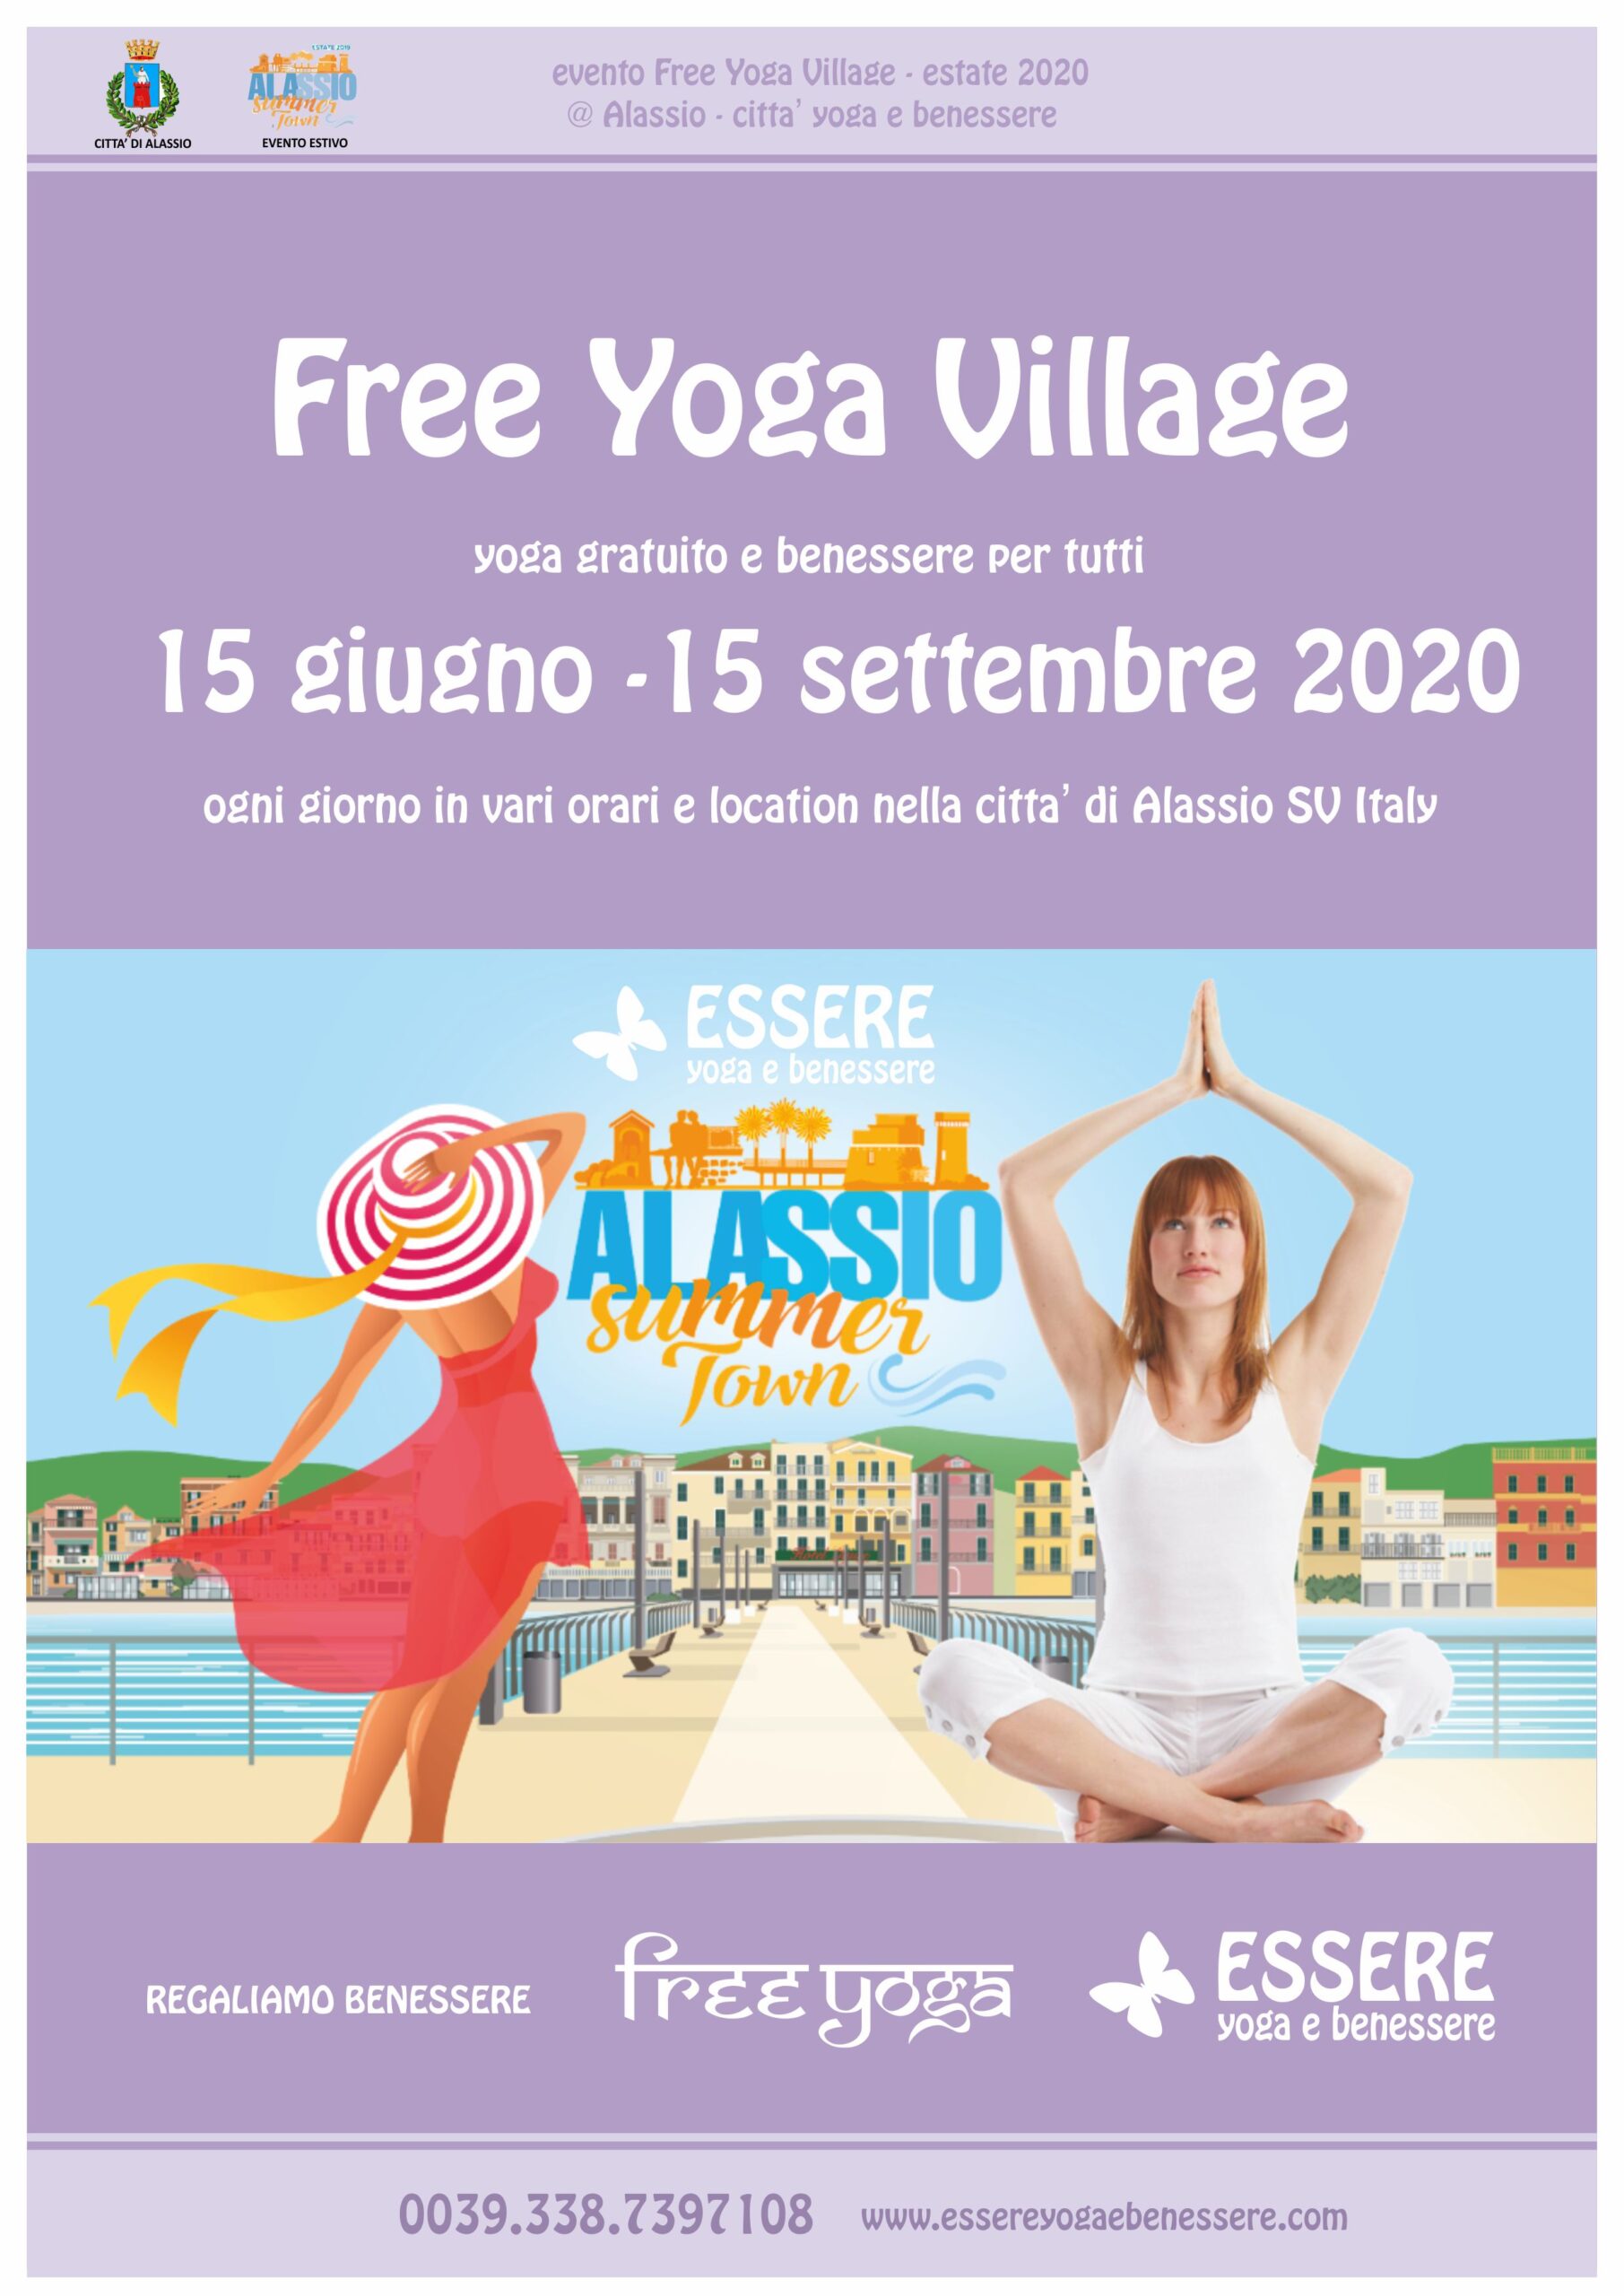 essere-free-yoga-gratuito-benessere-per-tutti-village-citta-alassio-visit-estate-lucia-ragazzi-marcella-fiore-evento-summer-town-sport-wellness-